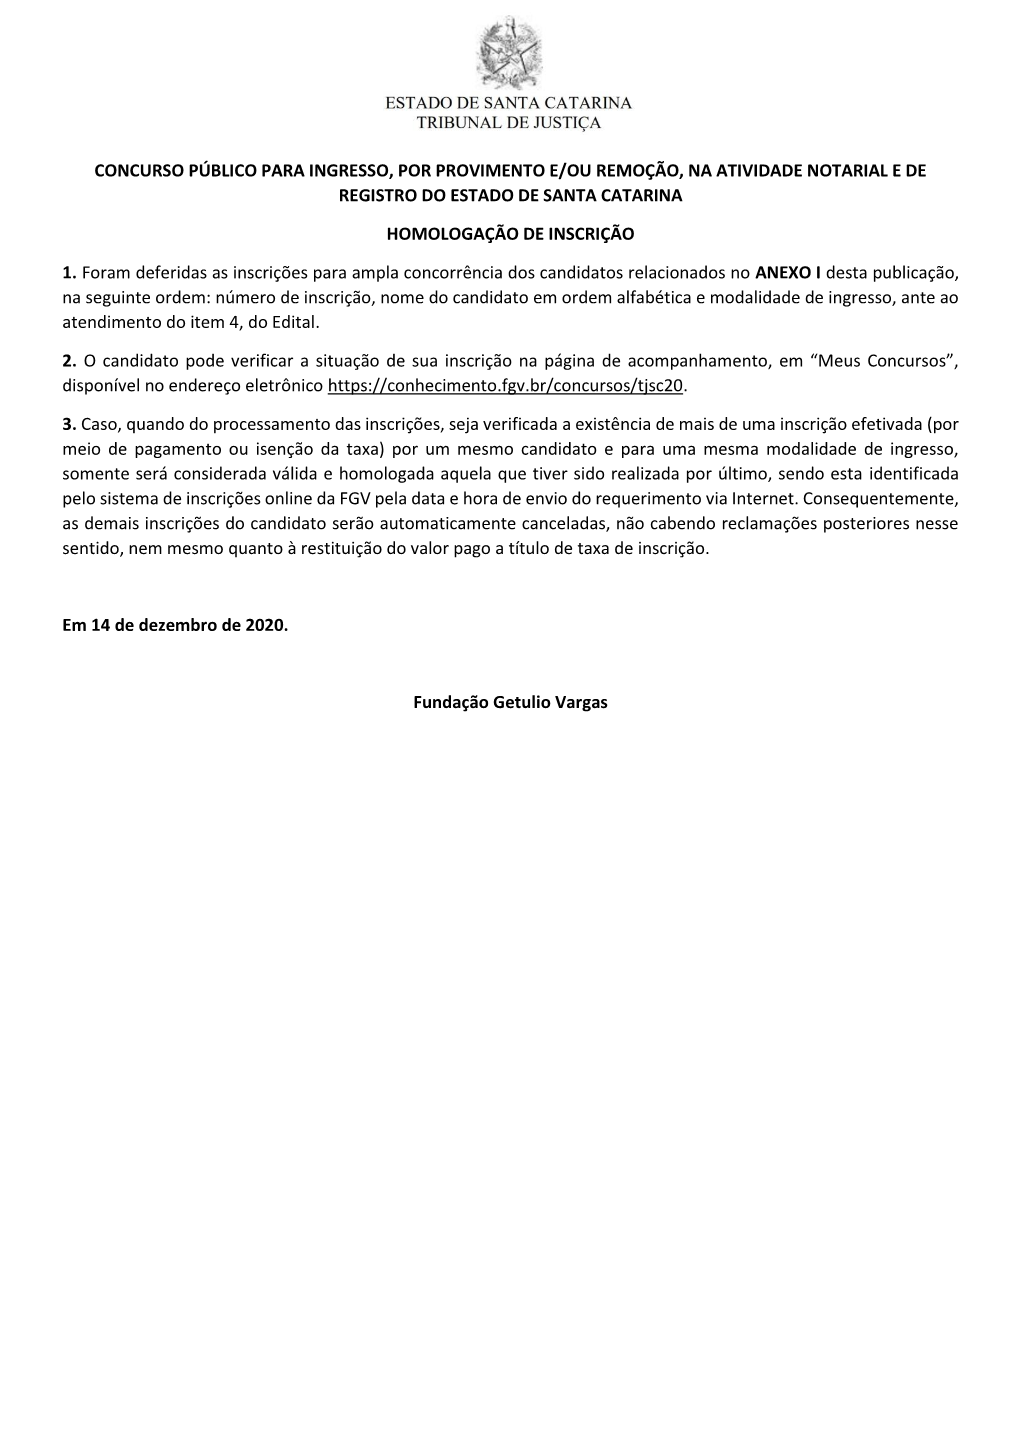 Concurso Público Para Ingresso, Por Provimento E/Ou Remoção, Na Atividade Notarial E De Registro Do Estado De Santa Catarina